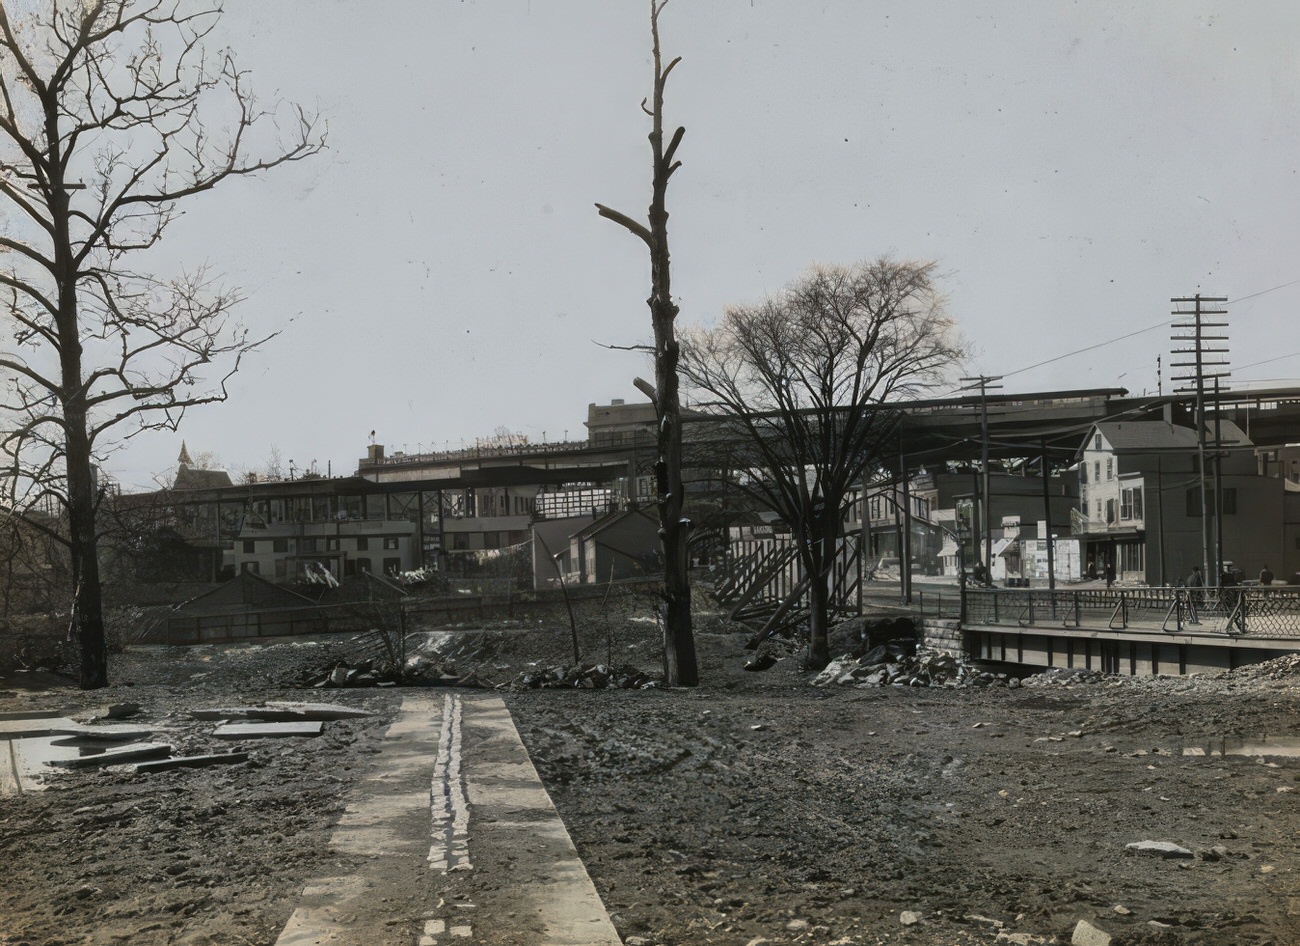 Tremont Avenue At Boston Road, Circa 1925.